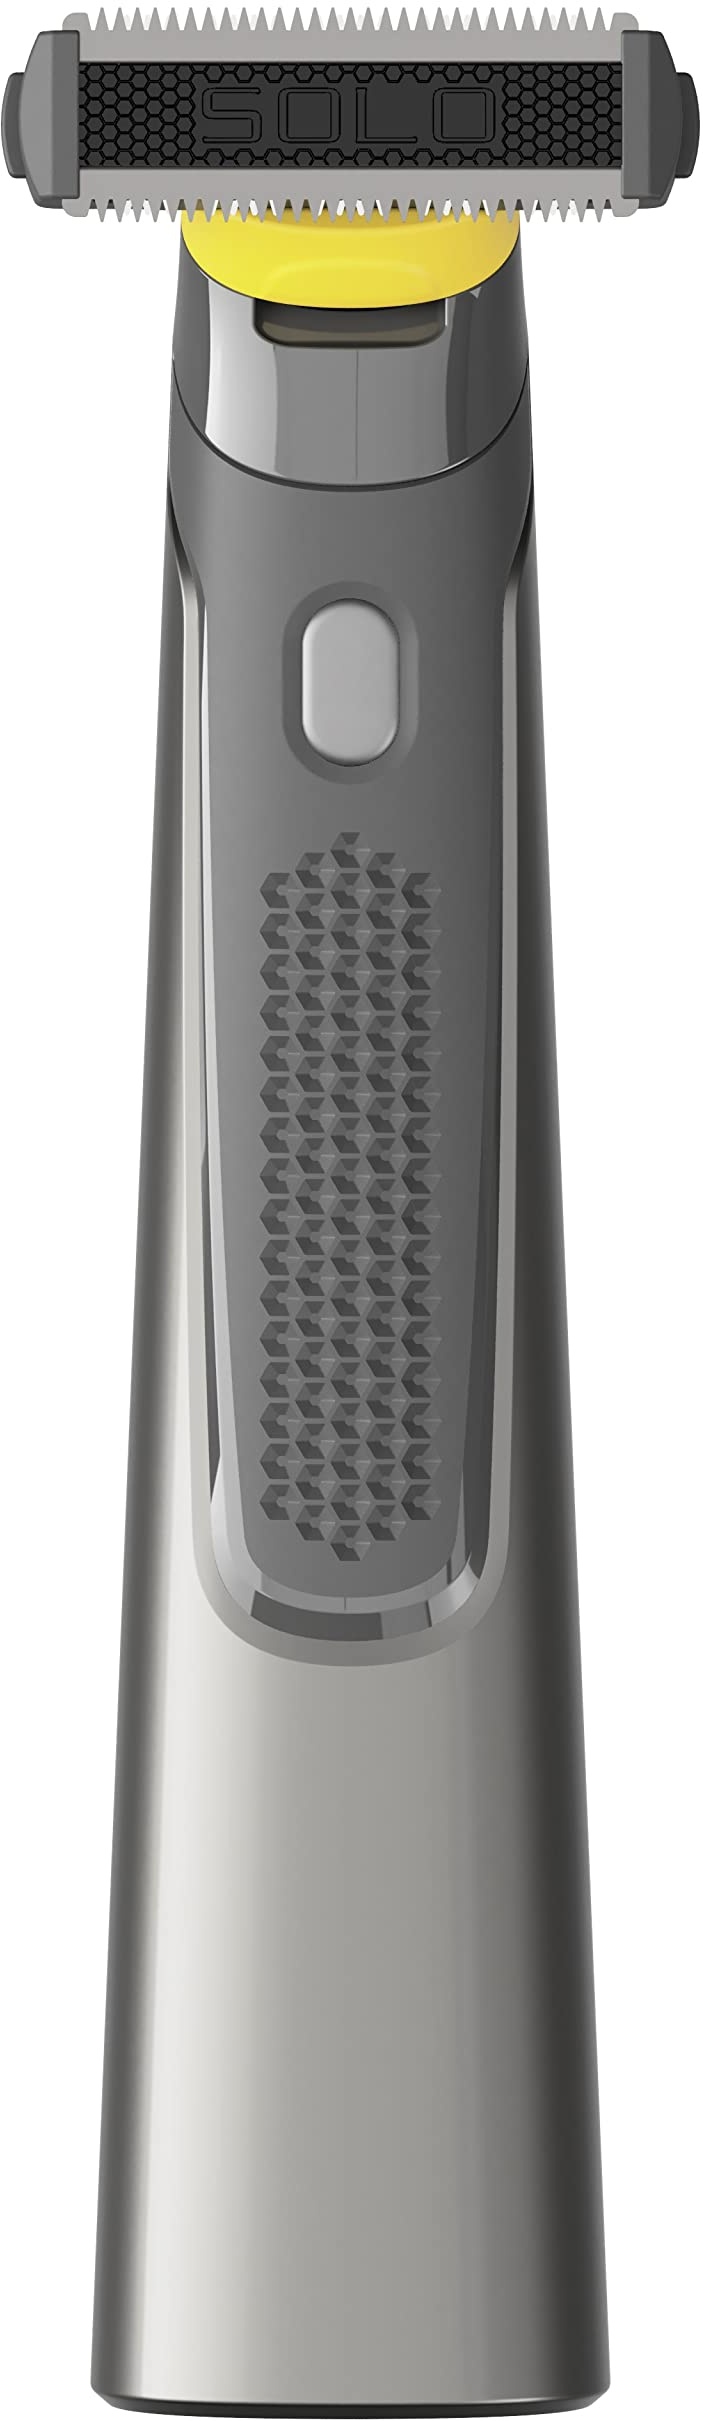 Micro Touch Titanium Solo – elektrischer Rasierer mit Titanium-beschichteten Edelstahlklingen für Bart und Körperhaar – 3 Klingen – trimmen, stylen & rasieren - empfohlen von Dominic Thiem